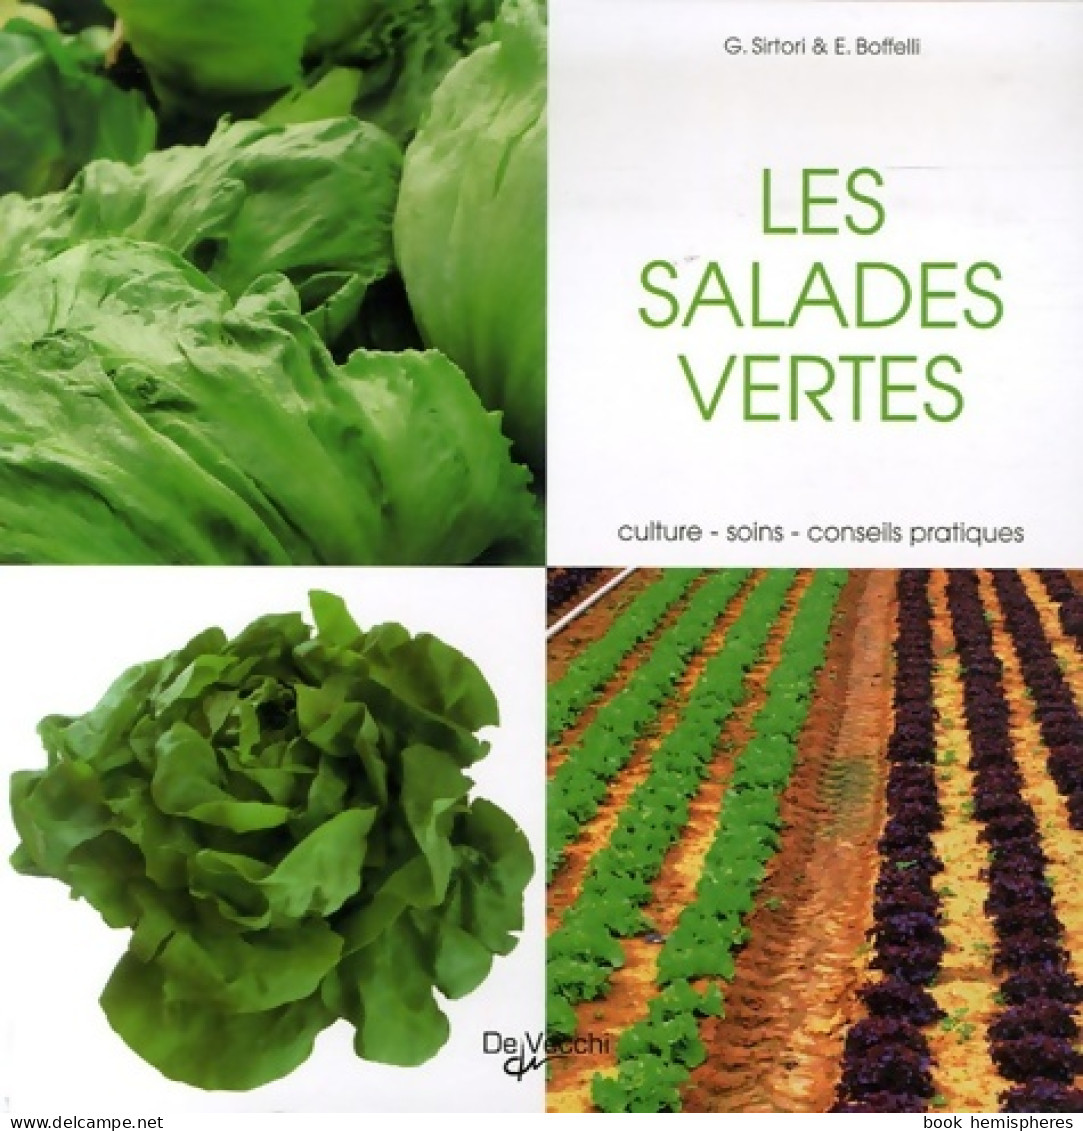 Les Salades Vertes (2007) De Guido Sirtori - Garden